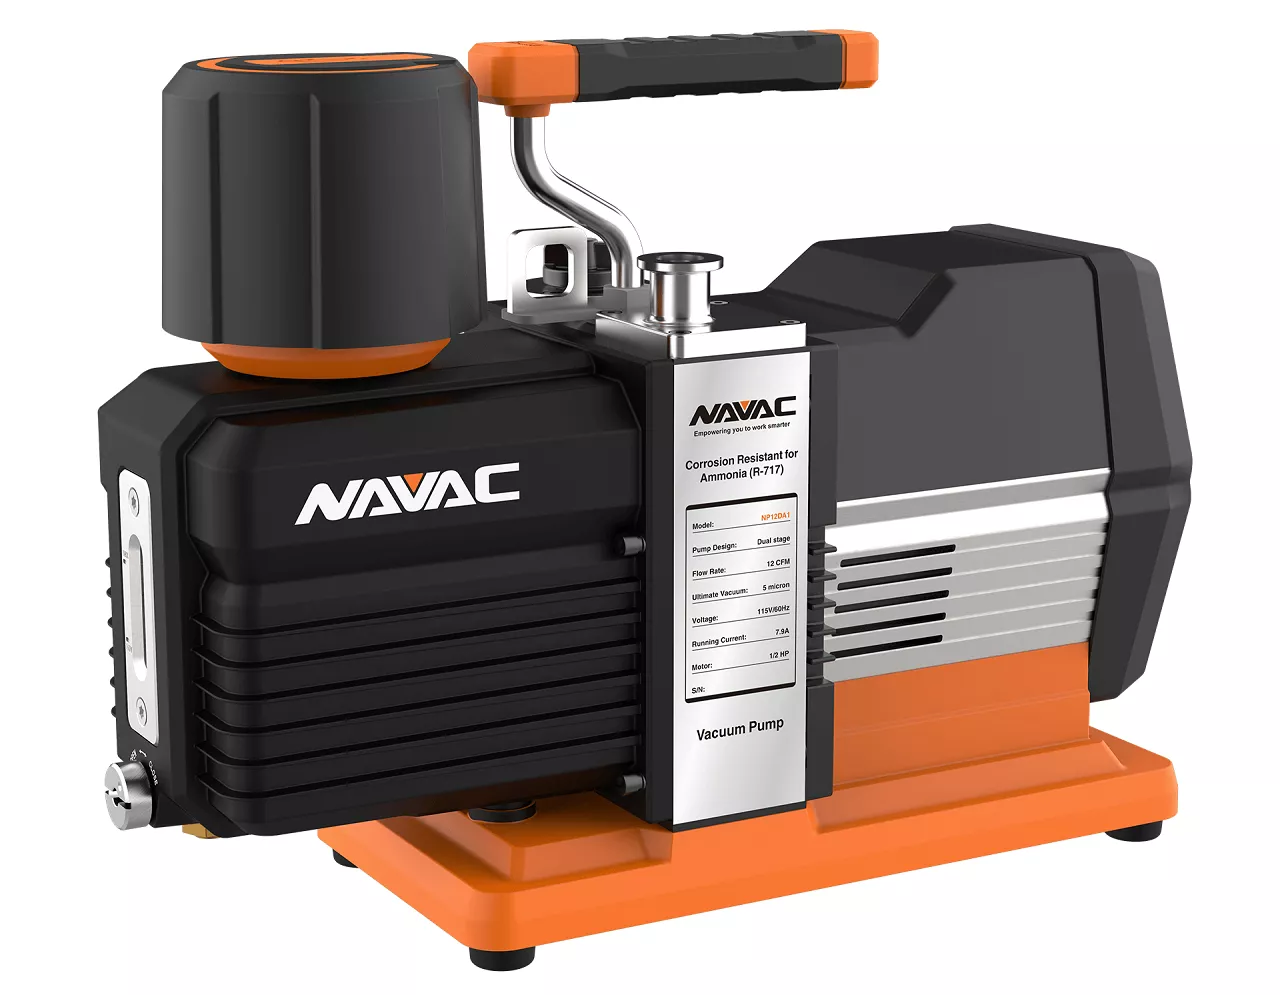 NAVAC Introduces Vacuum Pump for Ammonia